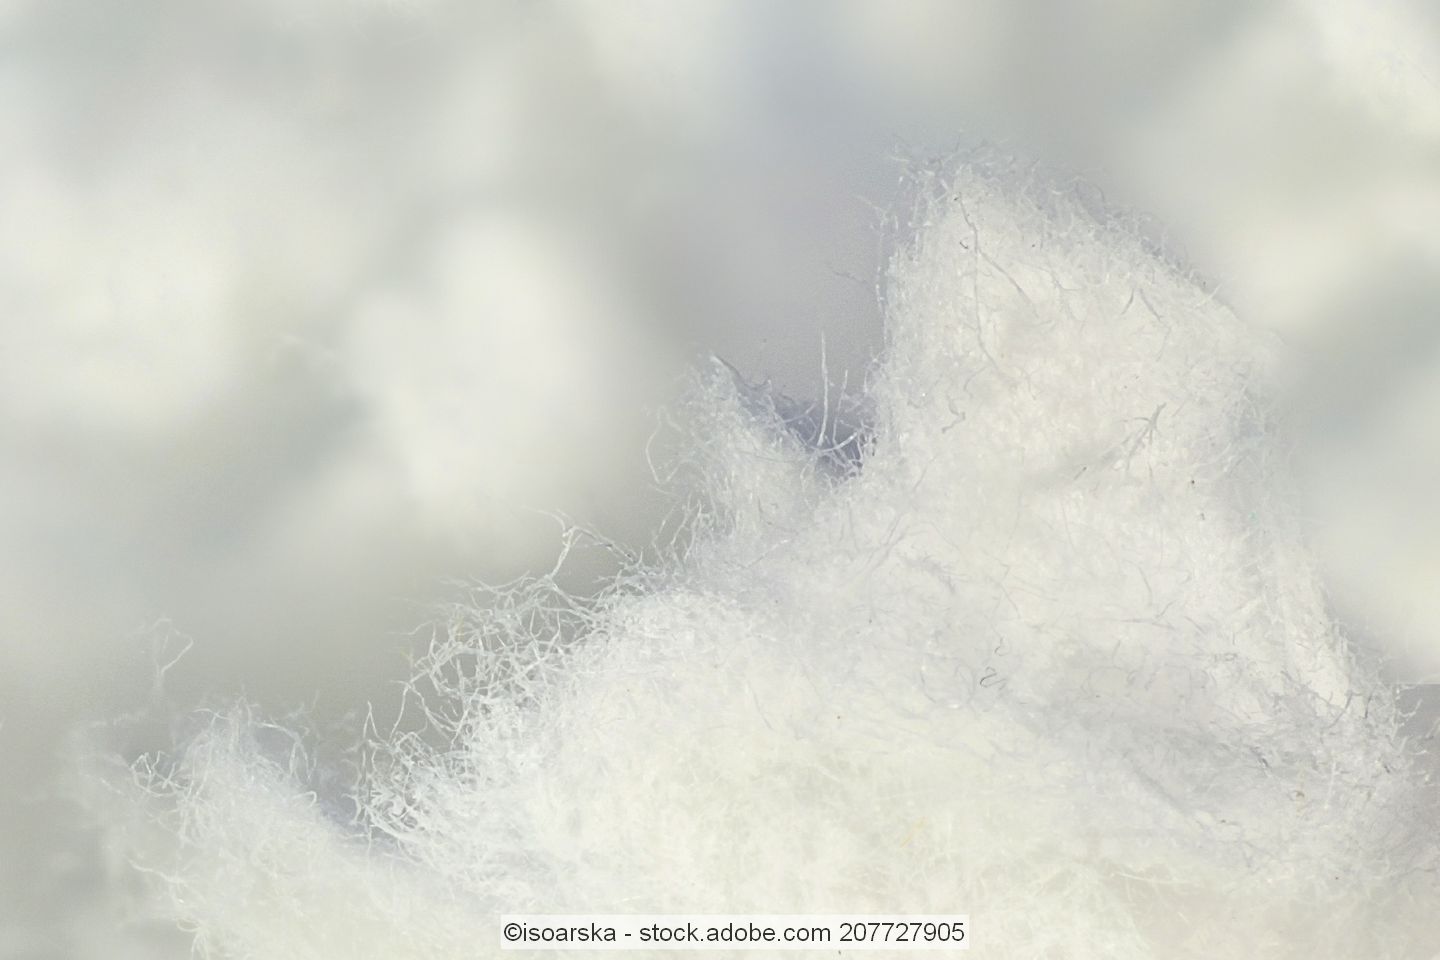 Cellulose fibres